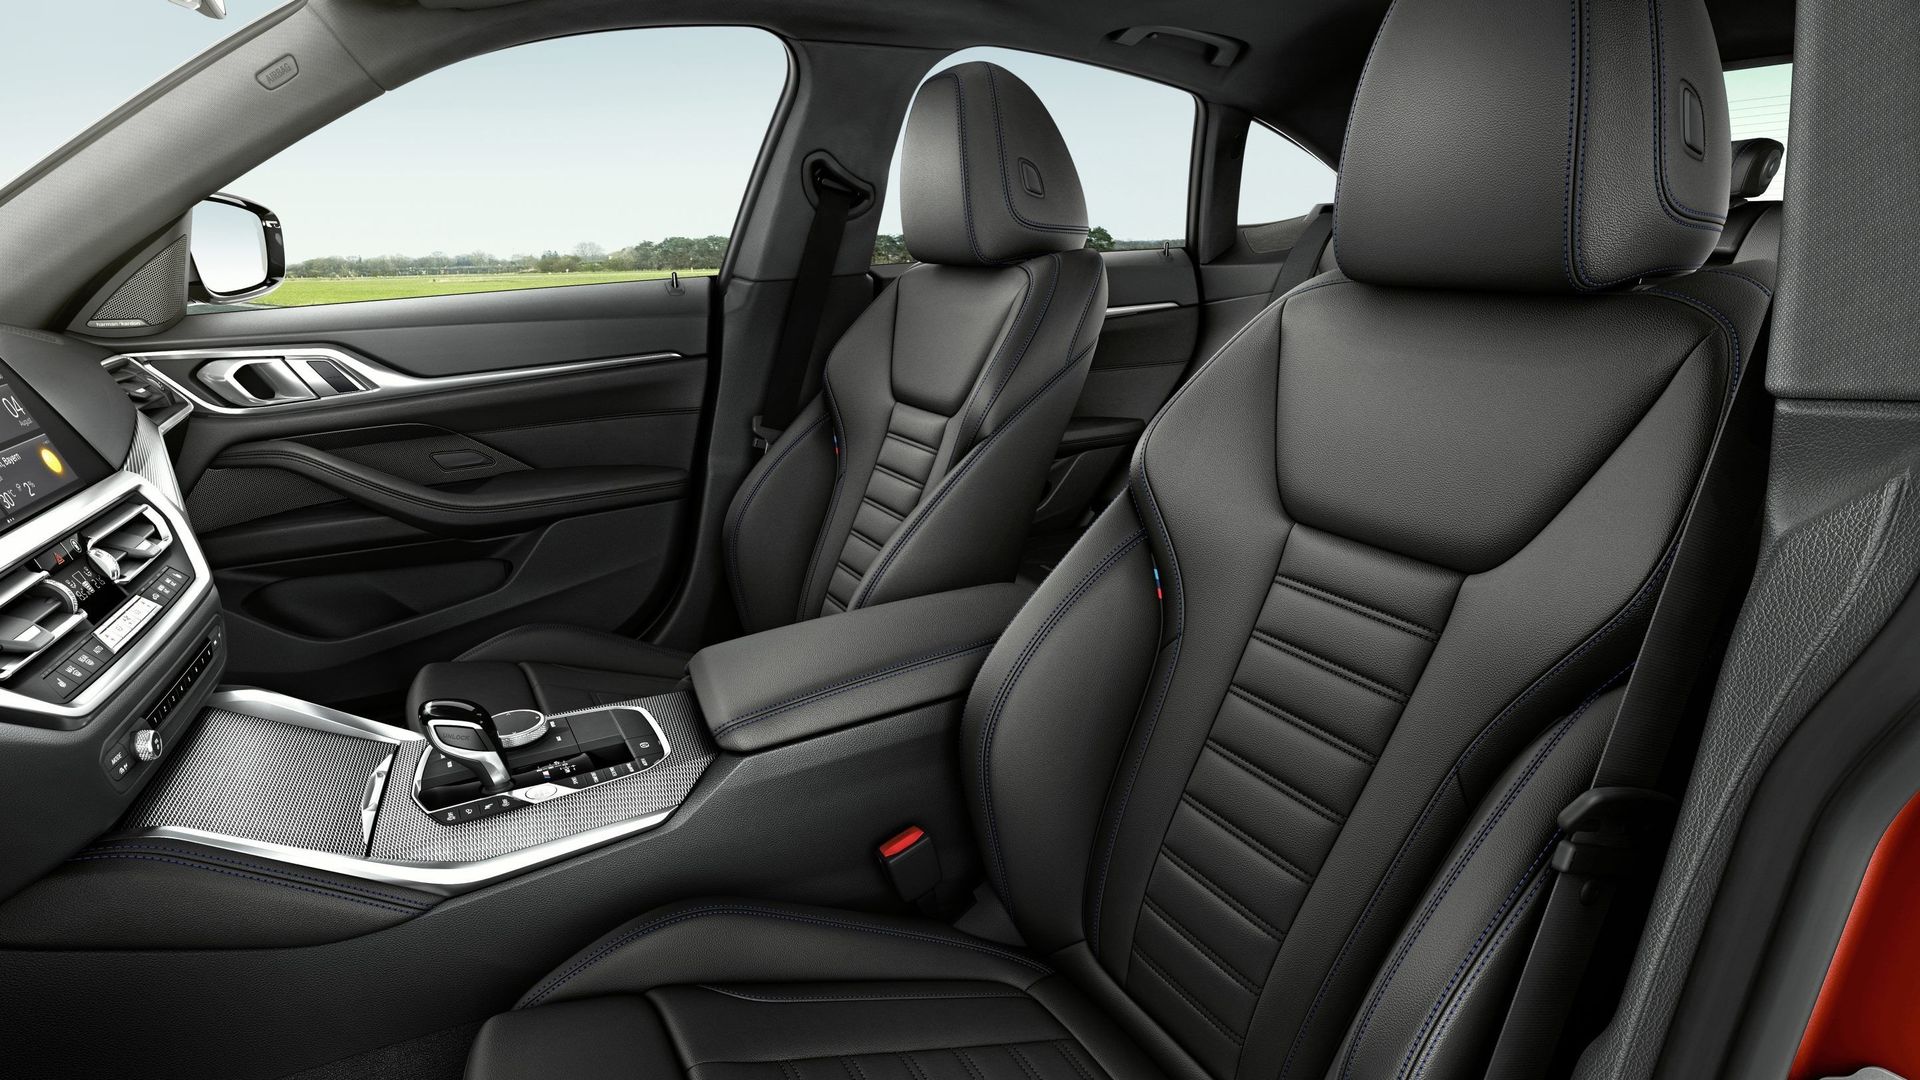 BMW autorise l'abonnement à de nombreuses options disponibles grâce à son système ConnectedDrive, à commencer par les sièges chauffants.